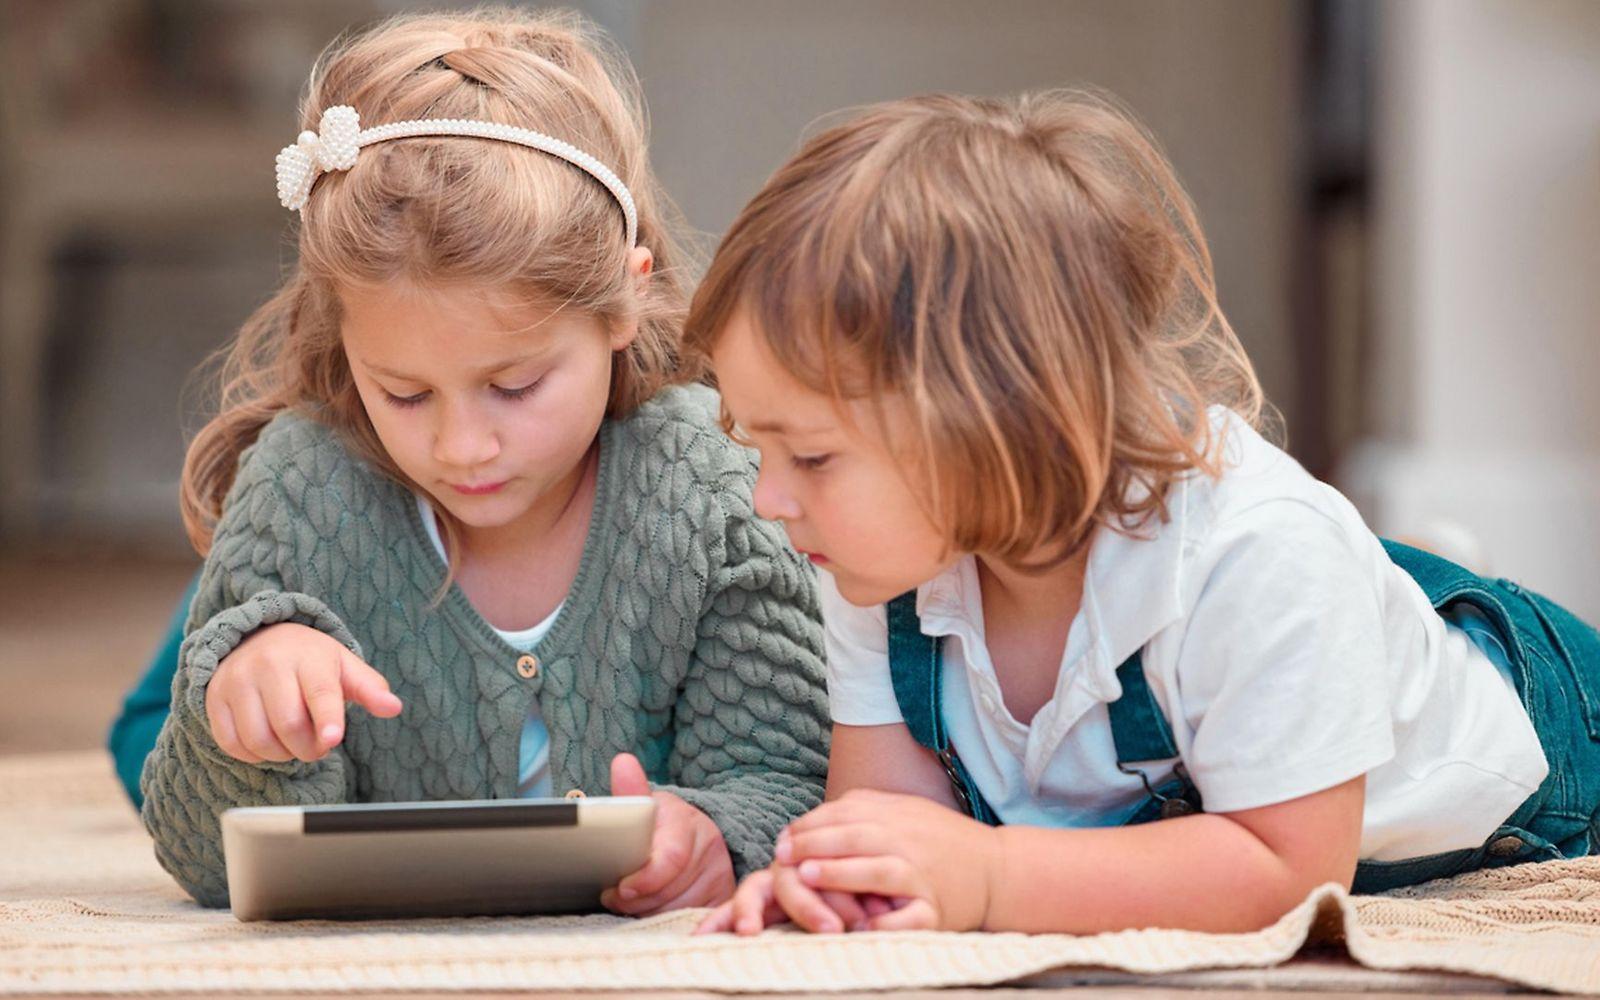 Mediensucht bei Kindern: Zwei Kleinkinder schauen auf ein Tablet